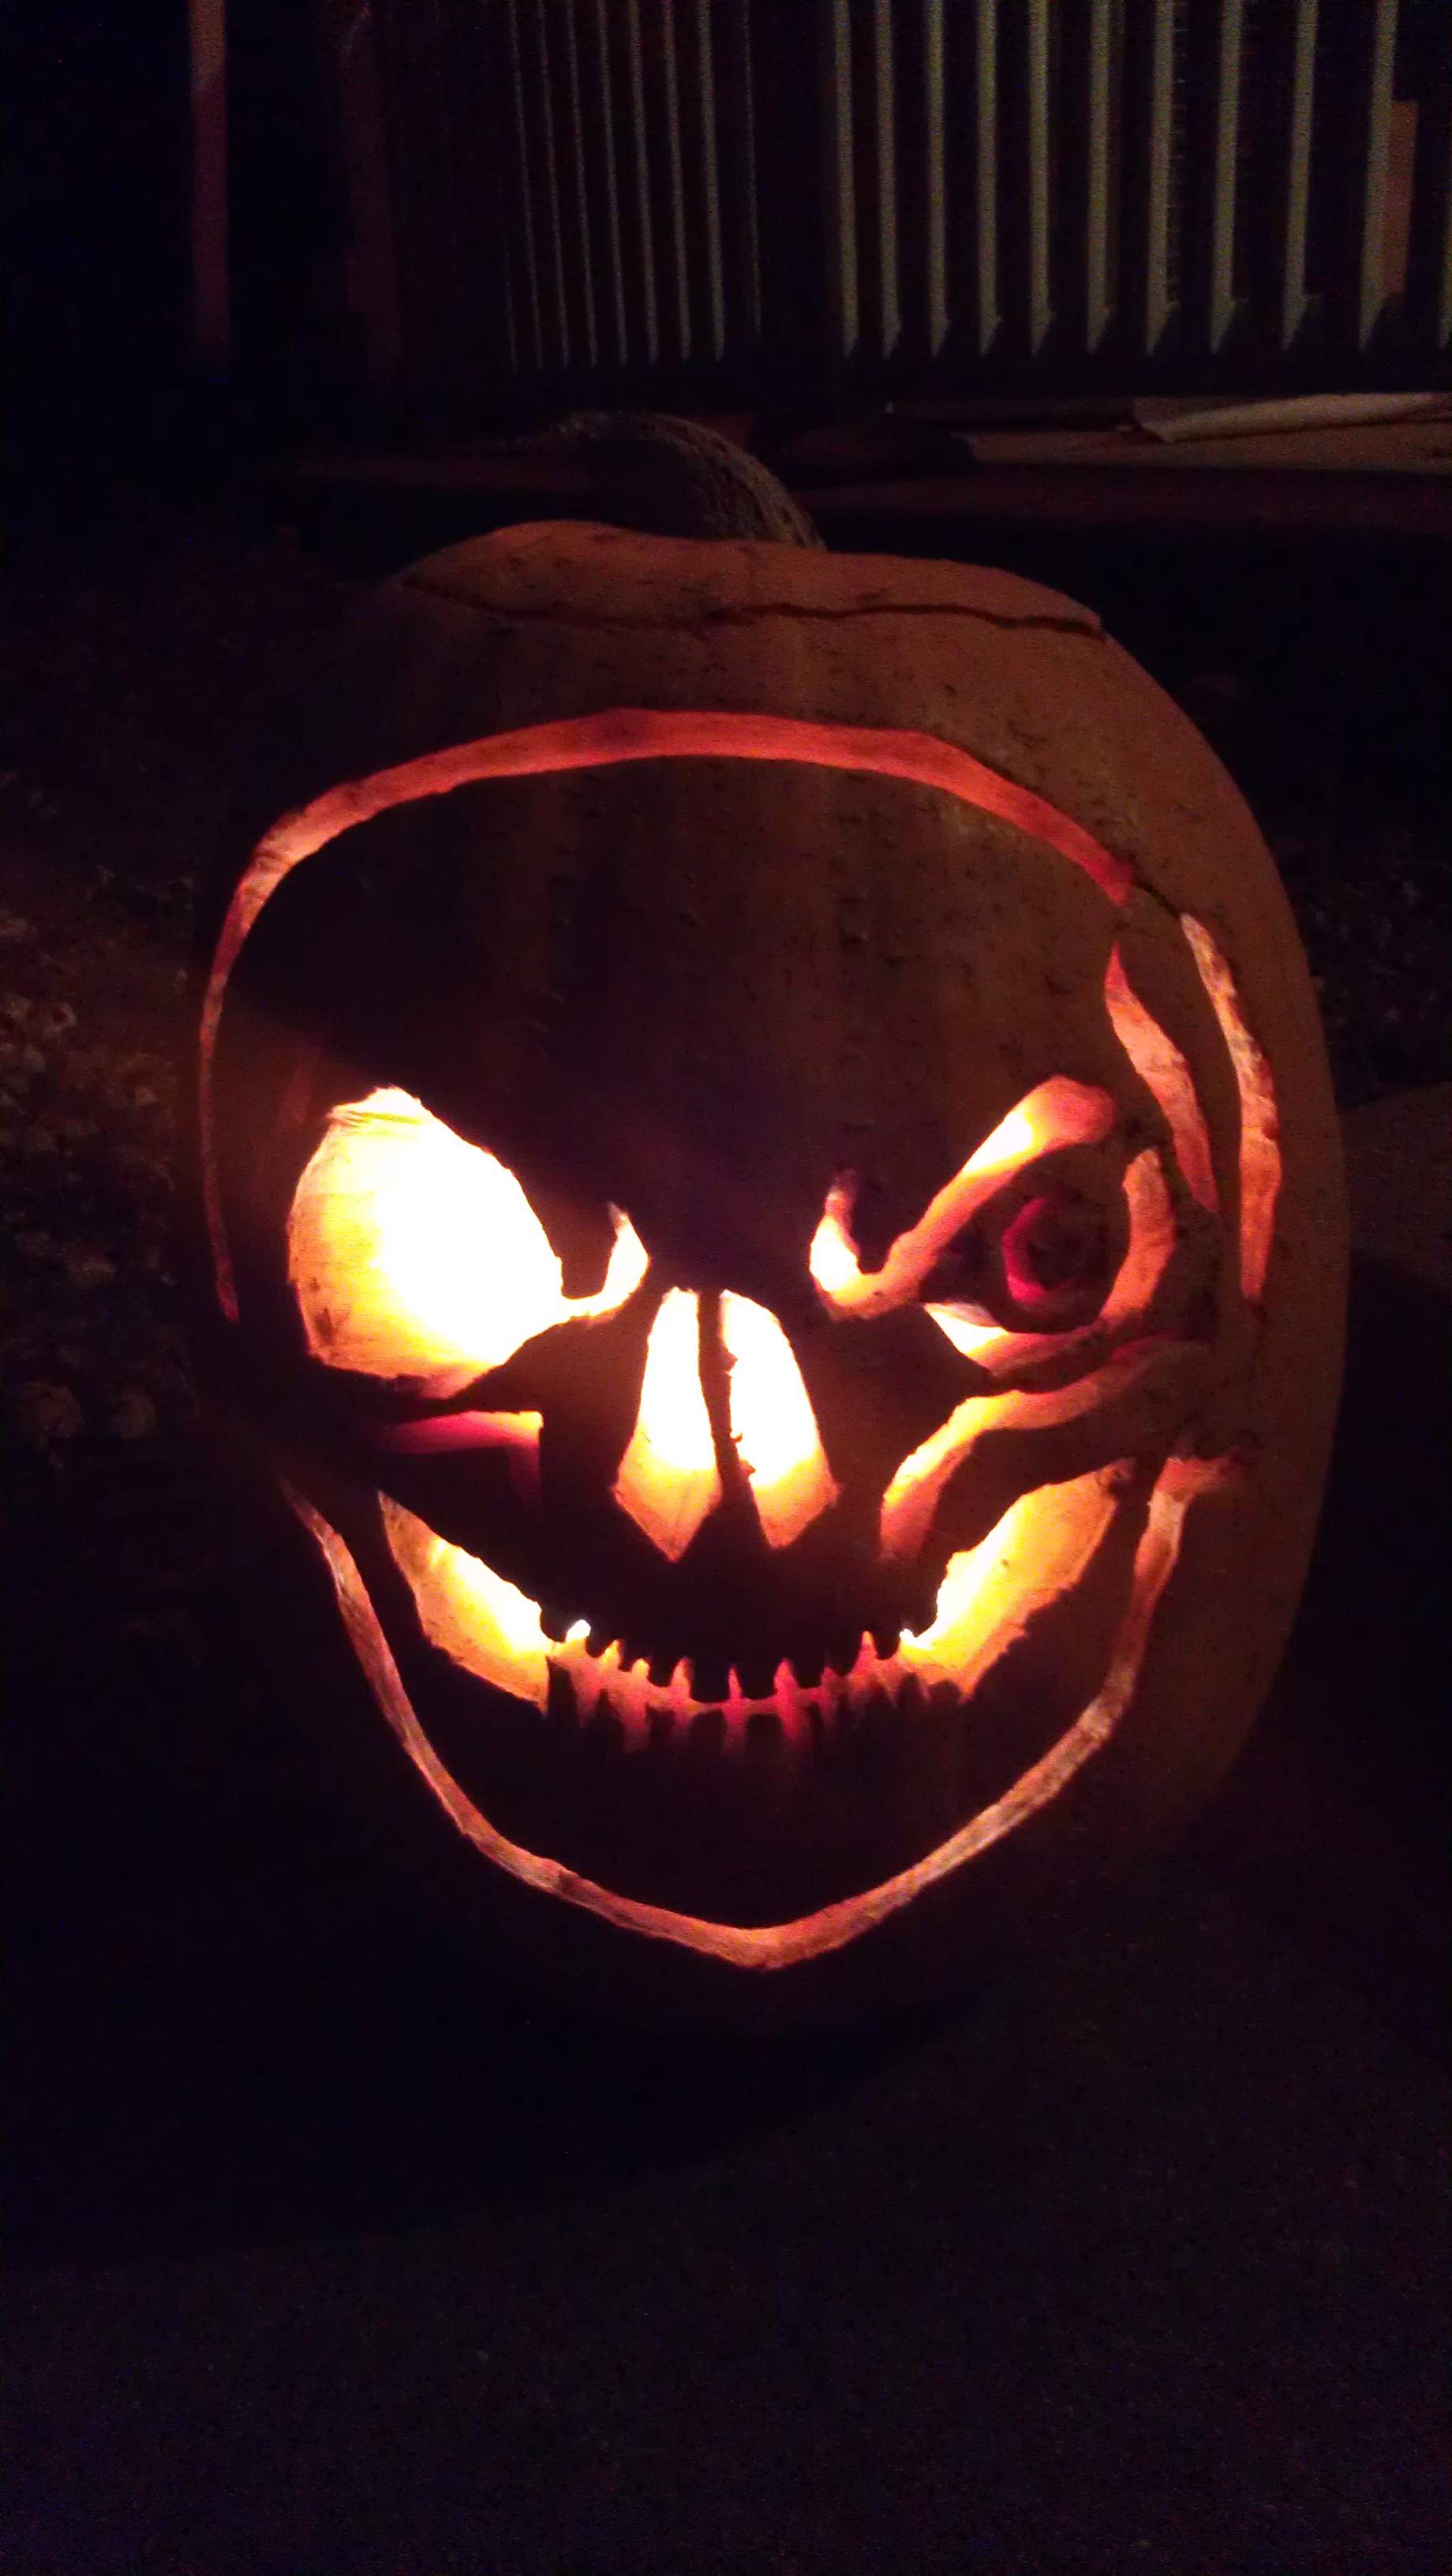 Pumpkin skull